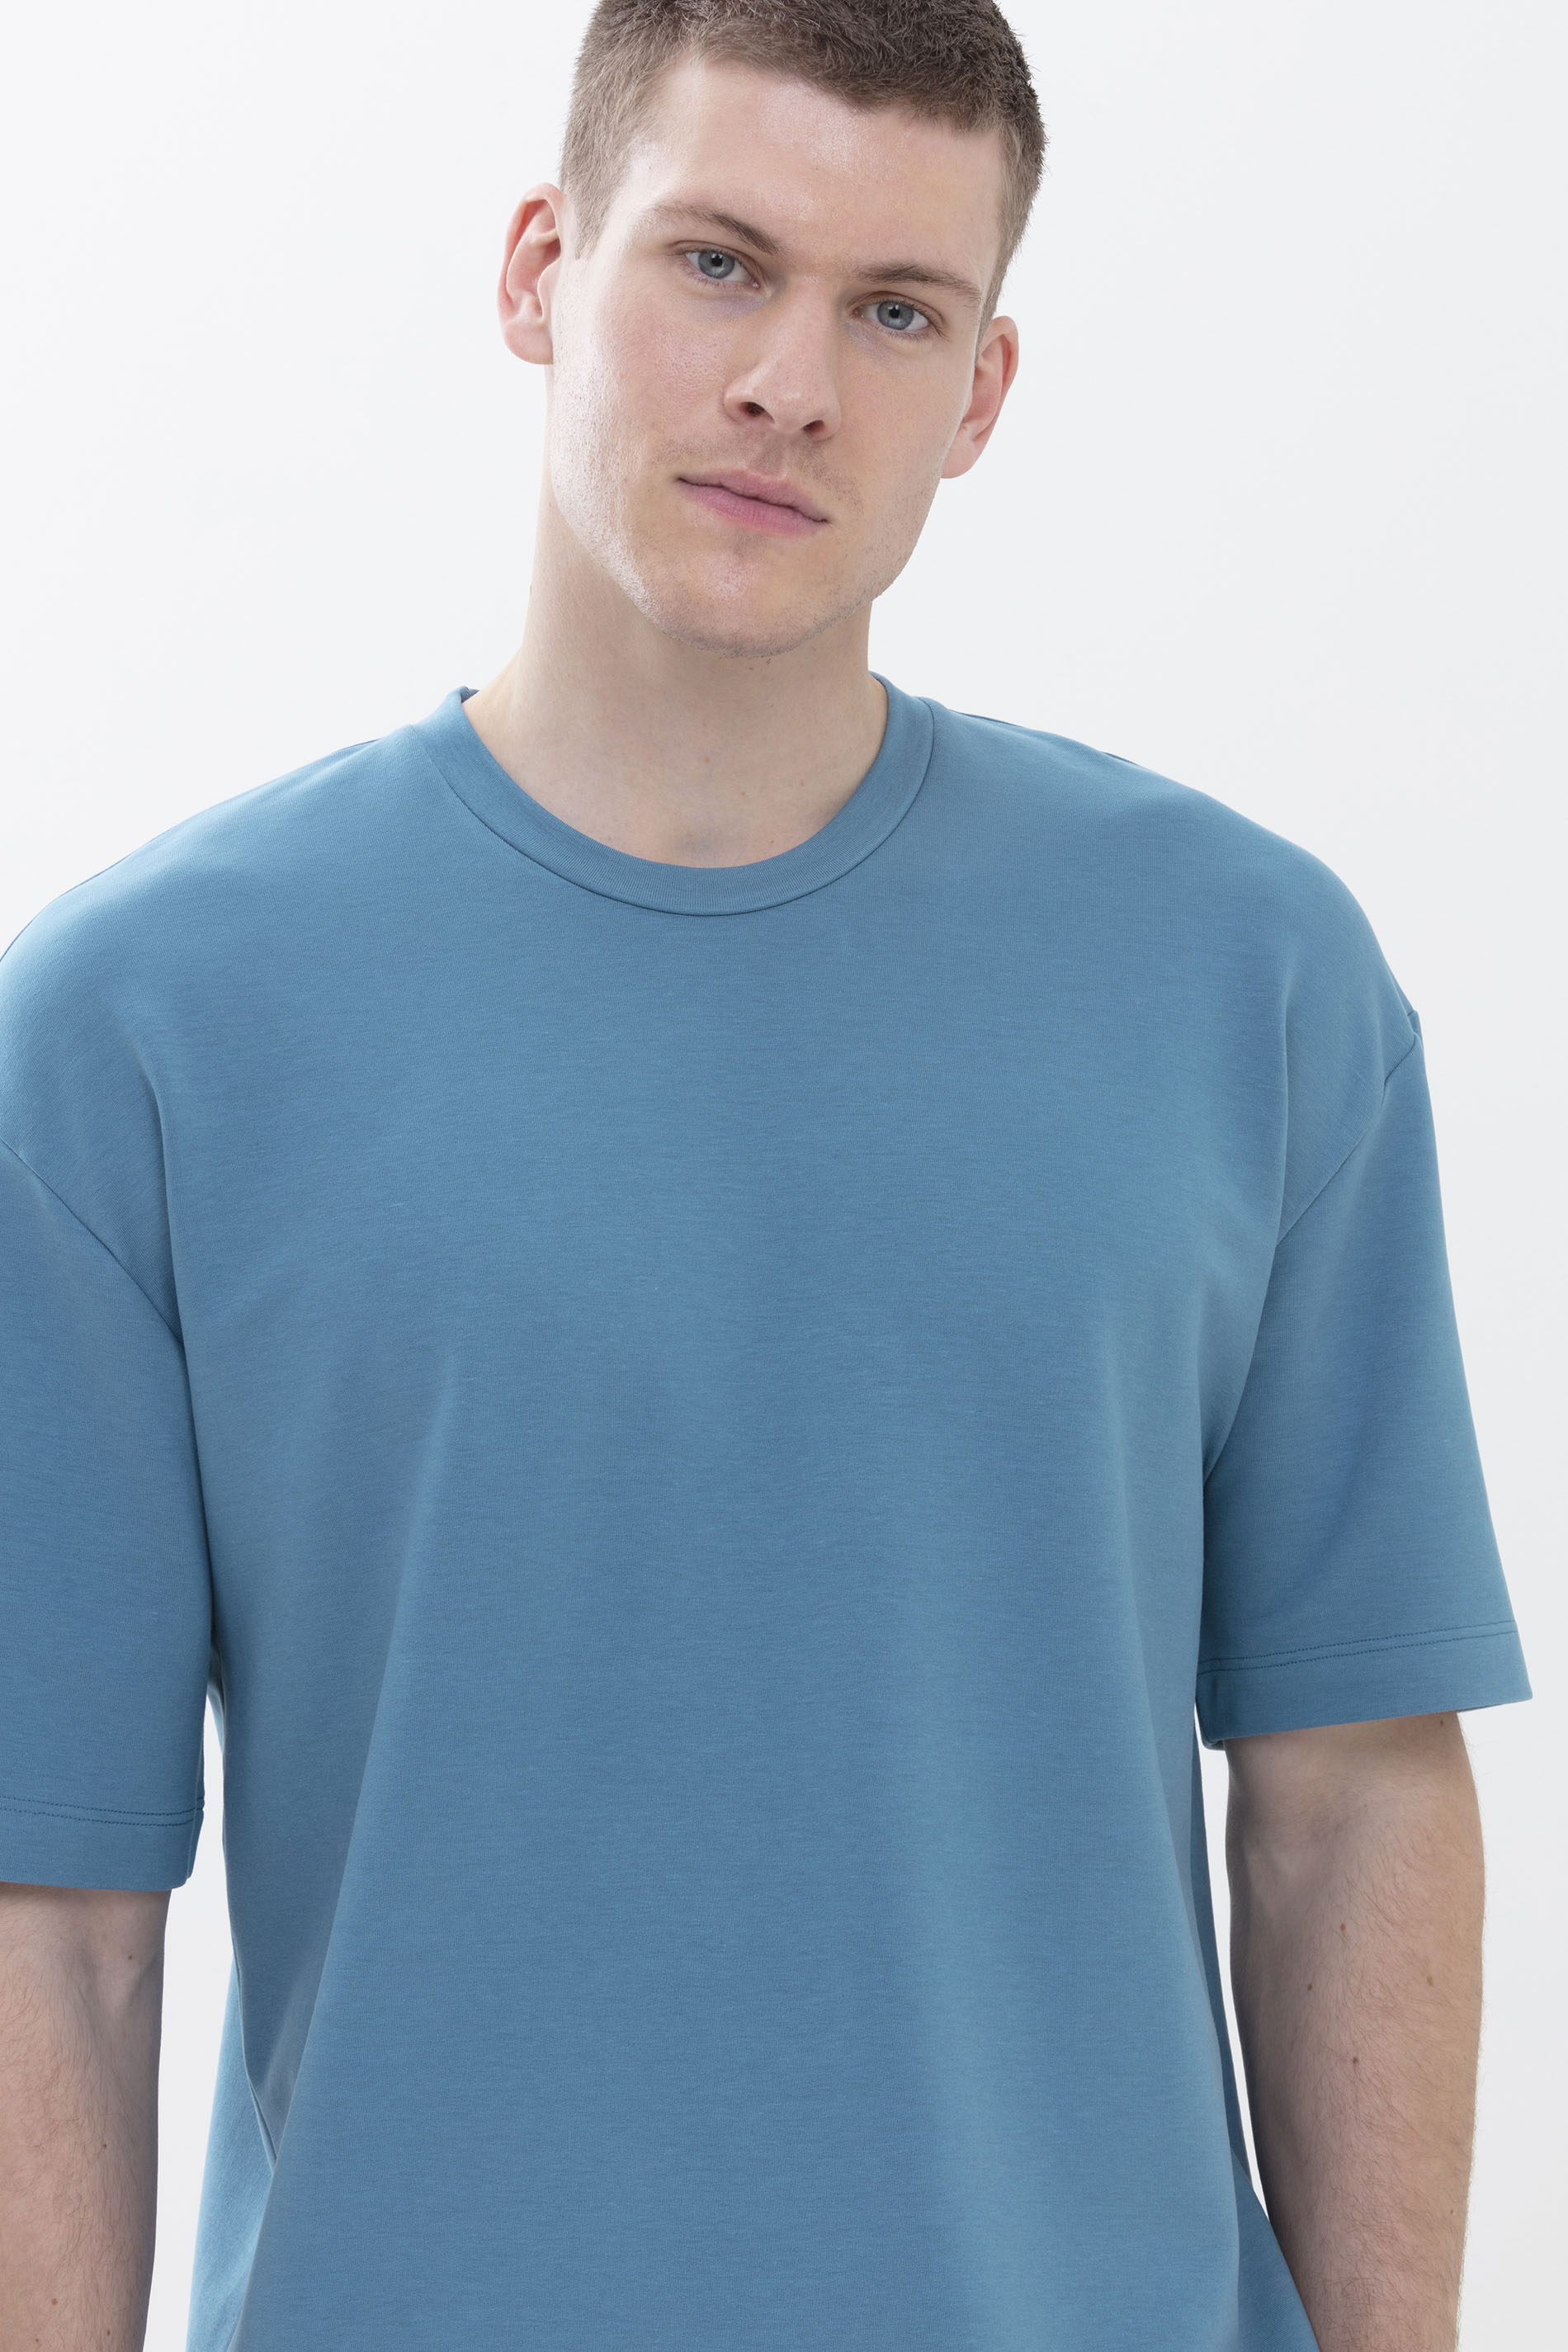 T-Shirt Yale Blue Serie Enjoy Colour Detailansicht 01 | mey®